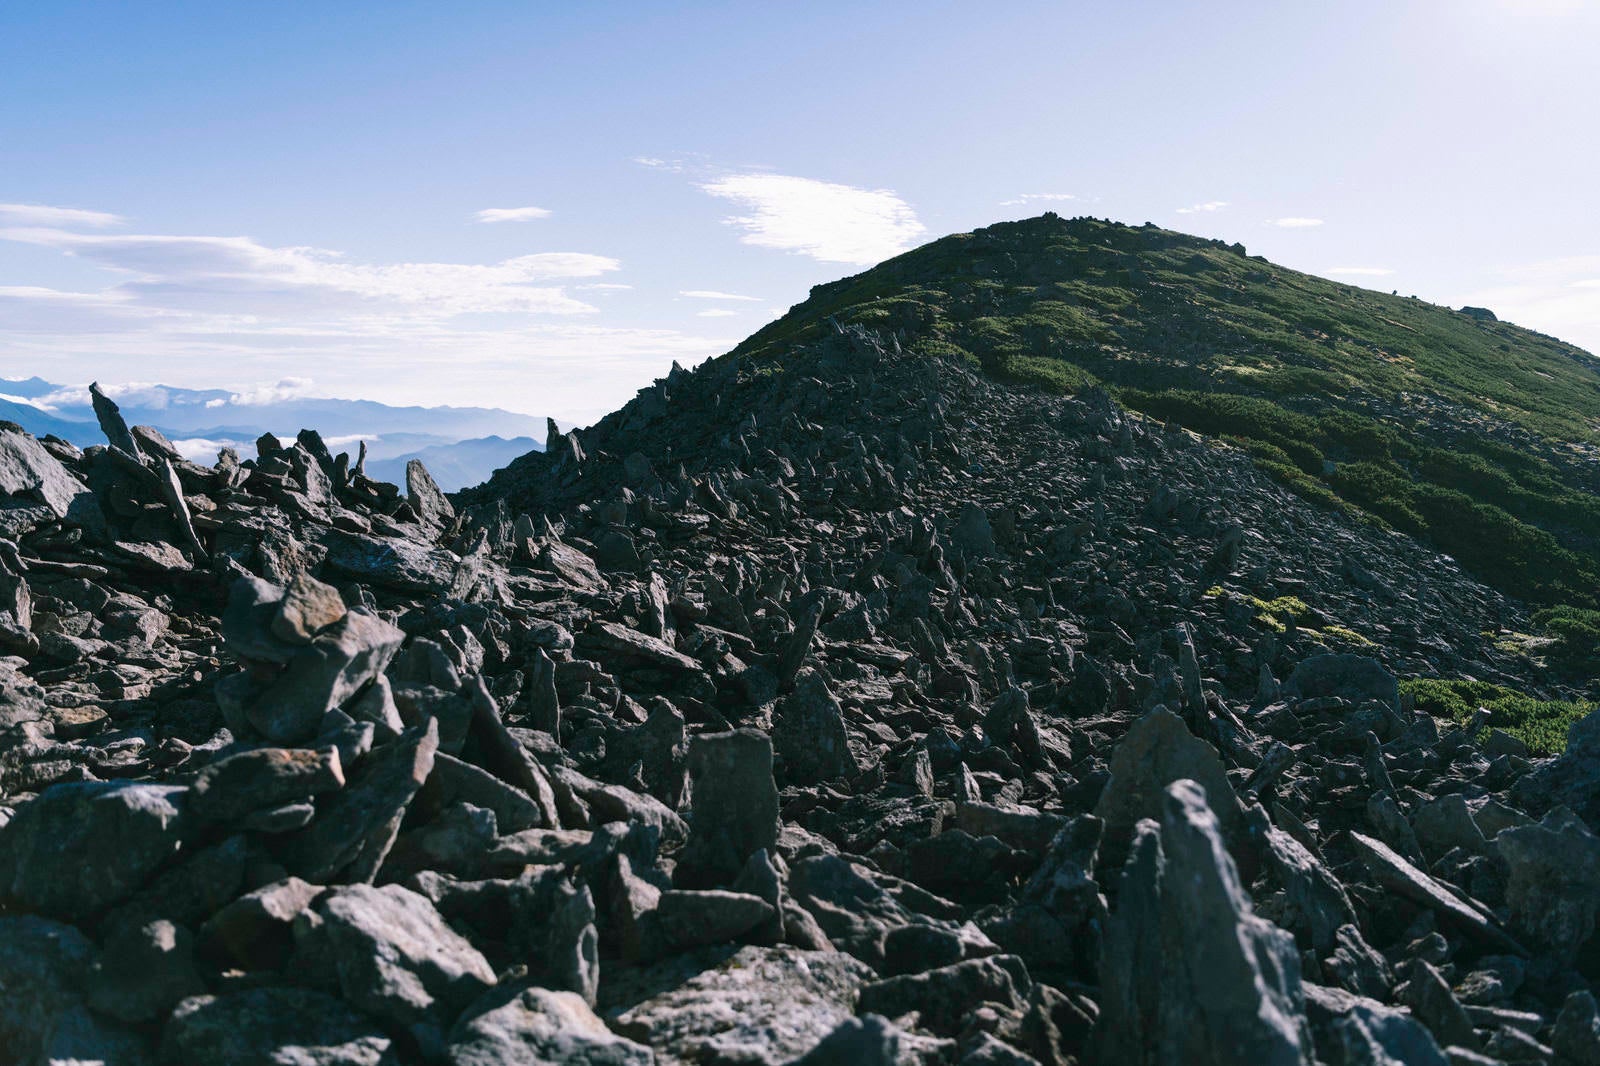 「積み石があたり一面を覆う継子岳」の写真